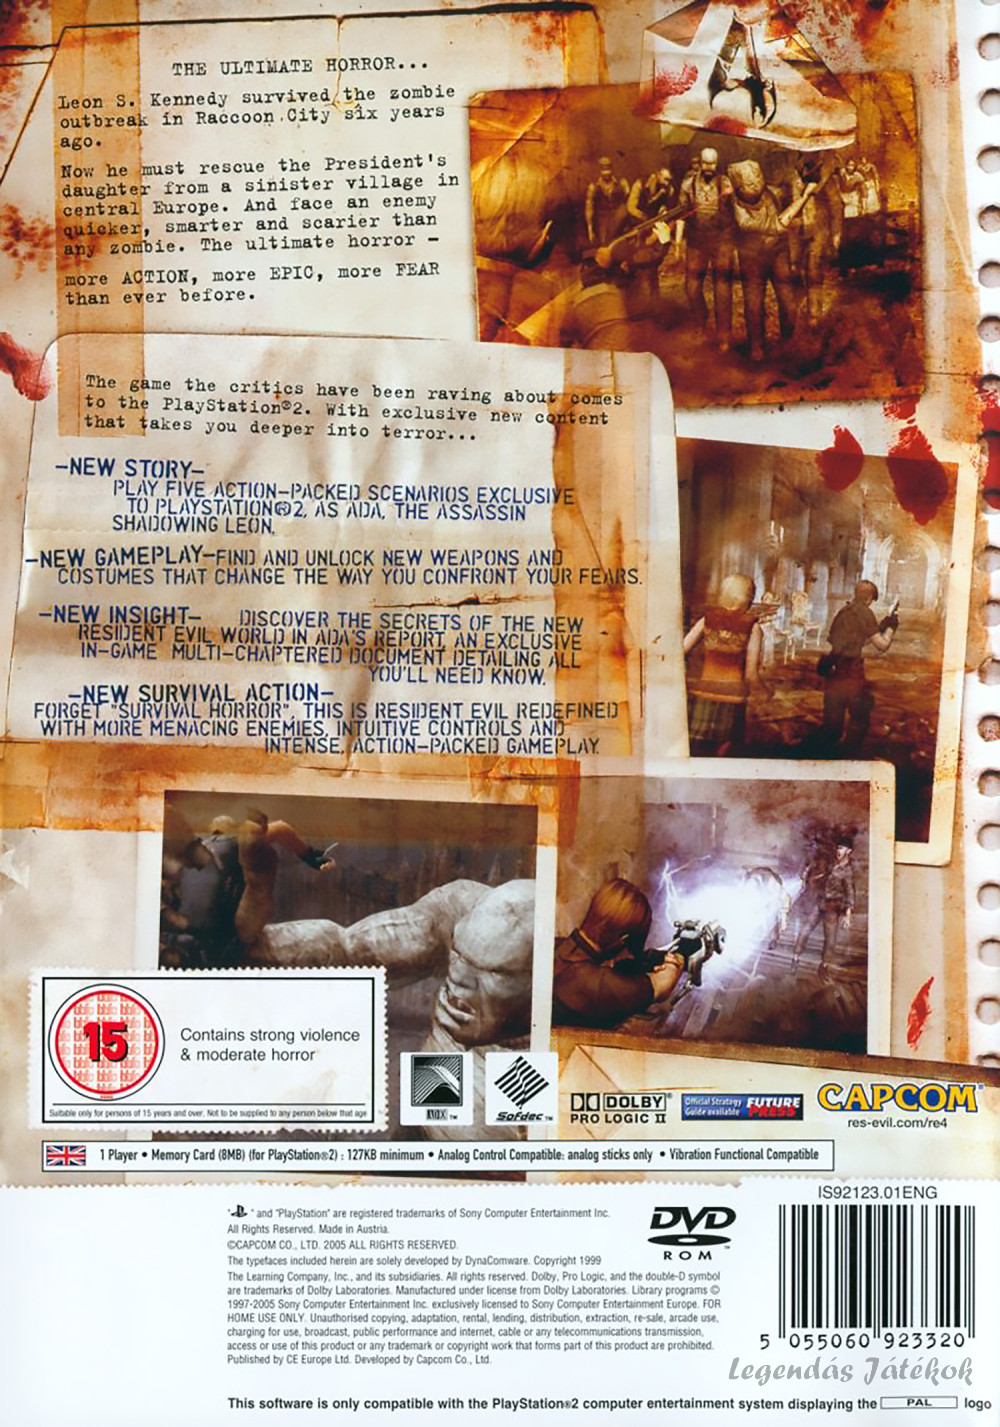 Resident evil 4 Ps2 PAL (használt)